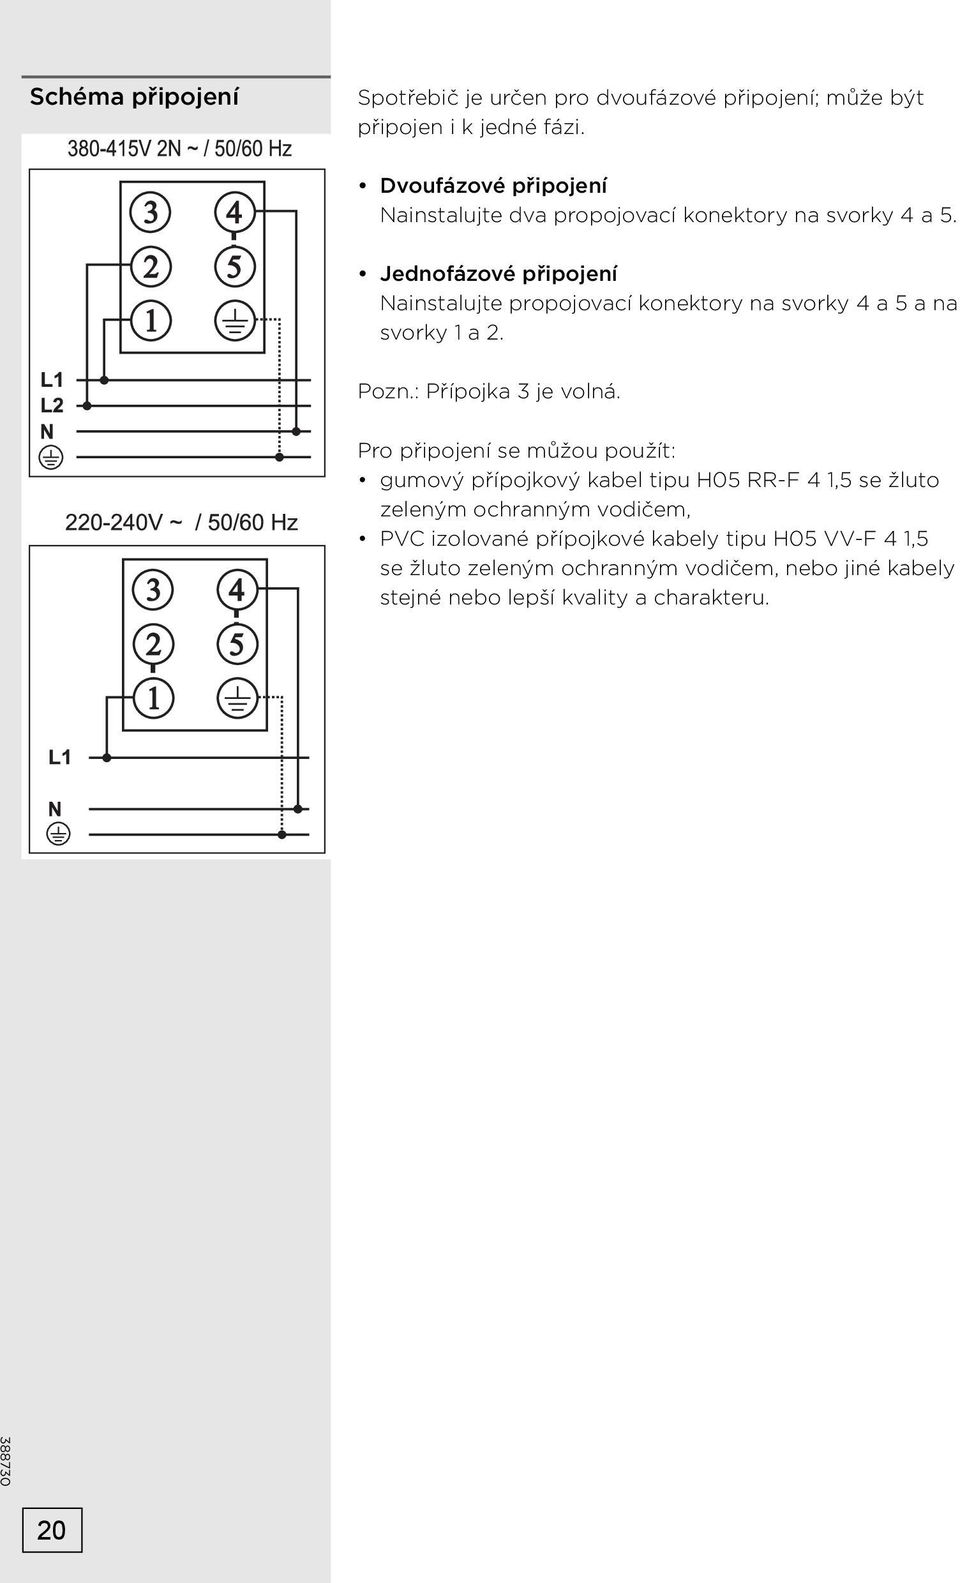 Jednofázové připojení Nainstalujte propojovací konektory na svorky 4 a 5 a na svorky 1 a 2. Pozn.: Přípojka 3 je volná.